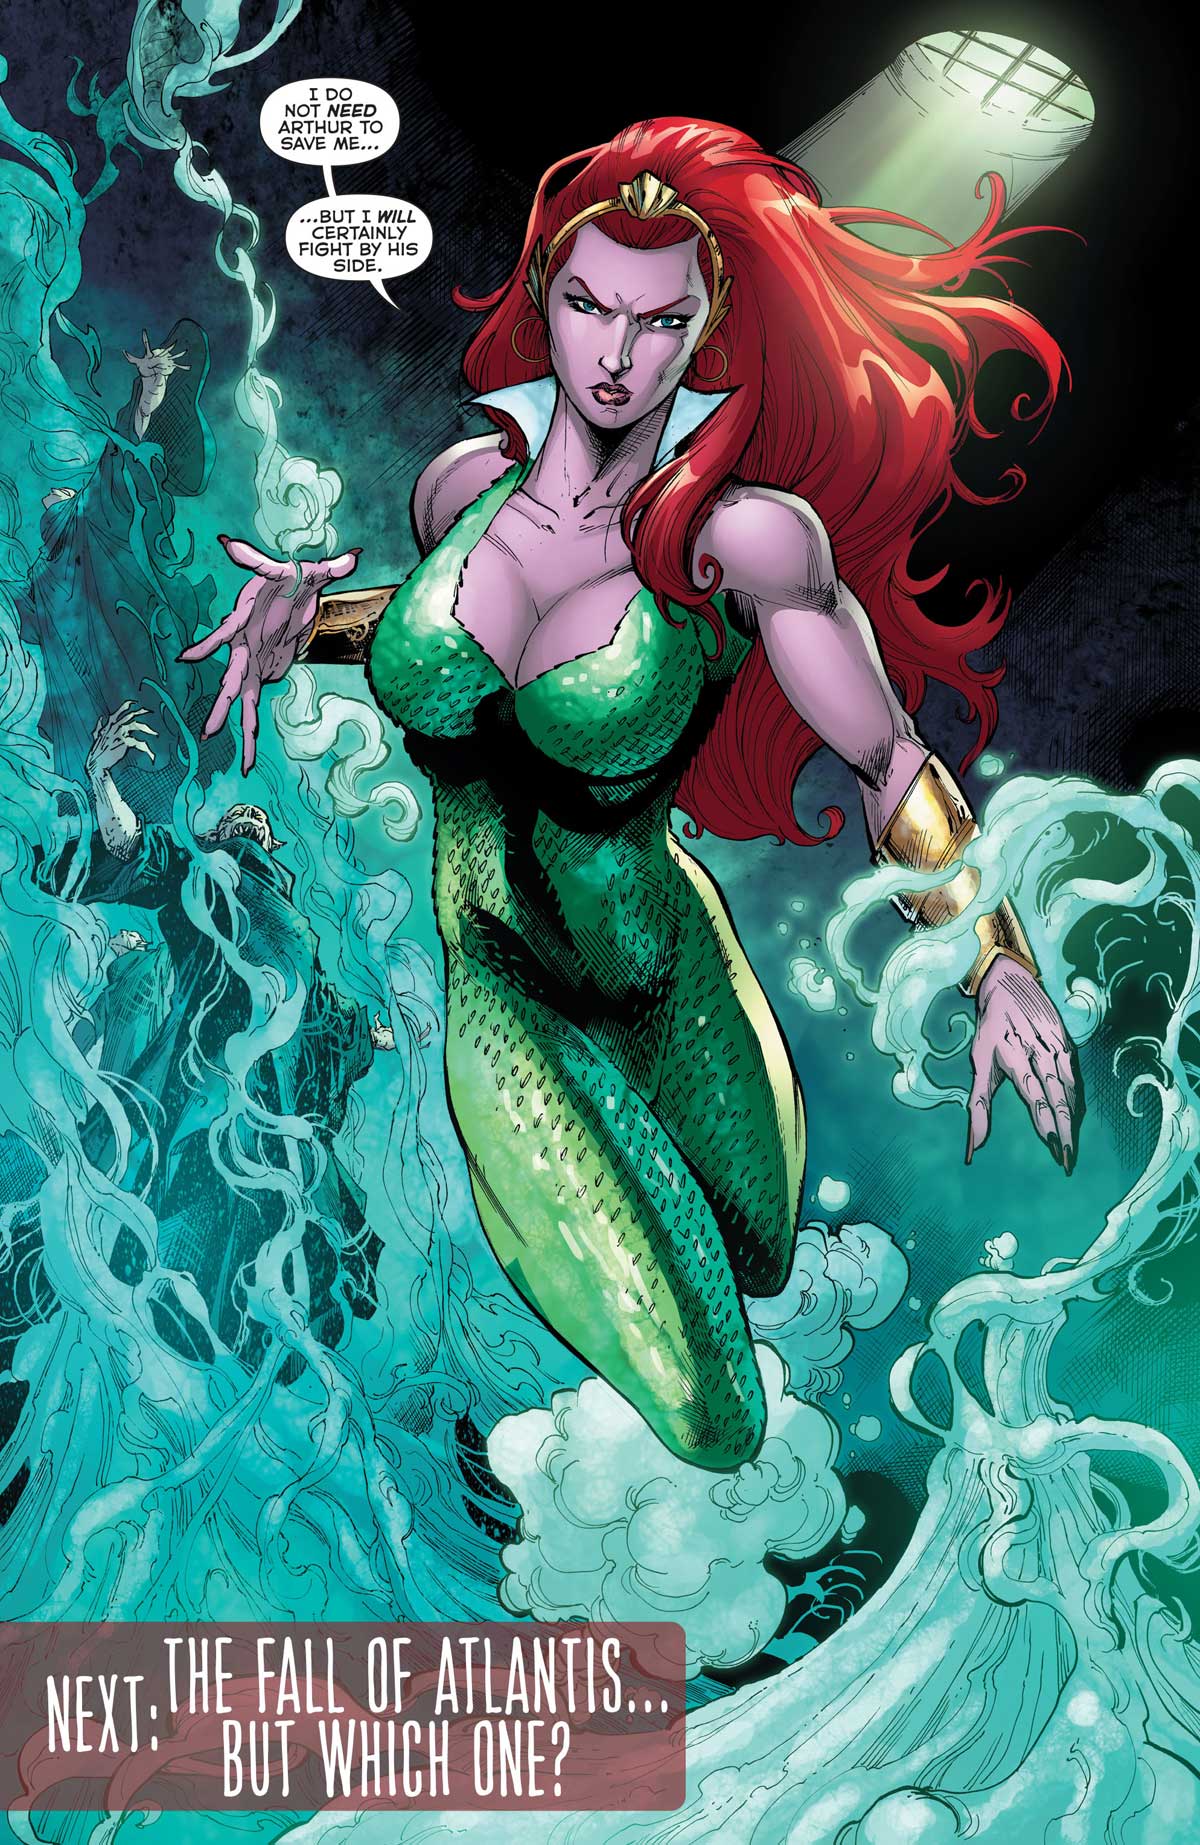 Aquaman #47